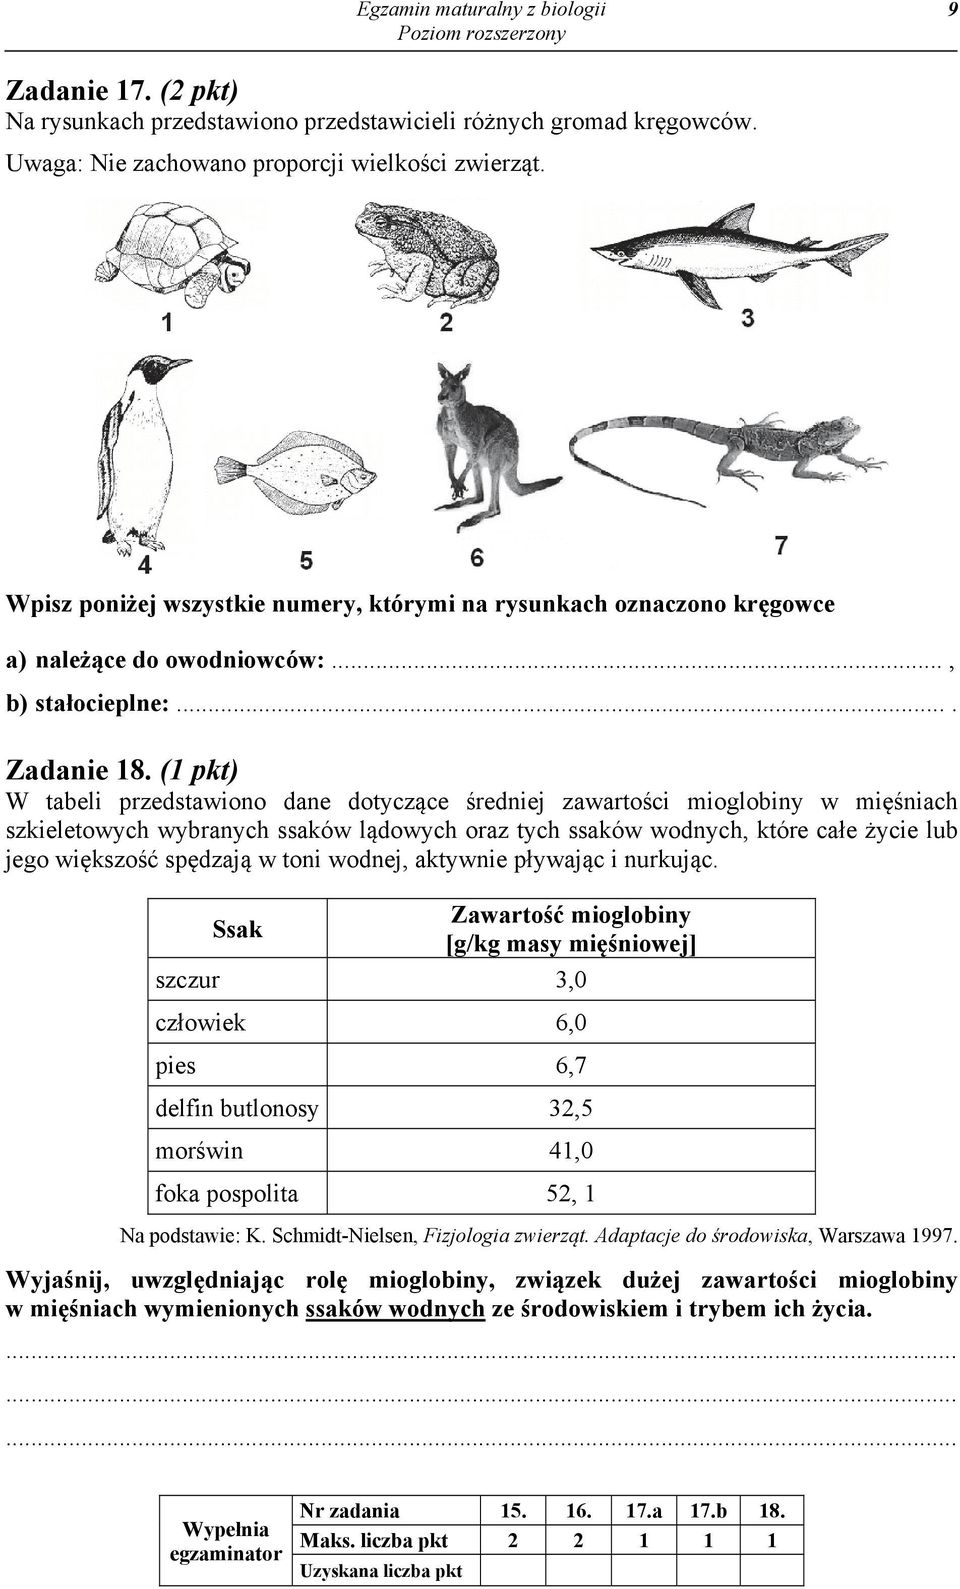 (1 pkt) W tabeli przedstawiono dane dotyczące średniej zawartości mioglobiny w mięśniach szkieletowych wybranych ssaków lądowych oraz tych ssaków wodnych, które całe życie lub jego większość spędzają